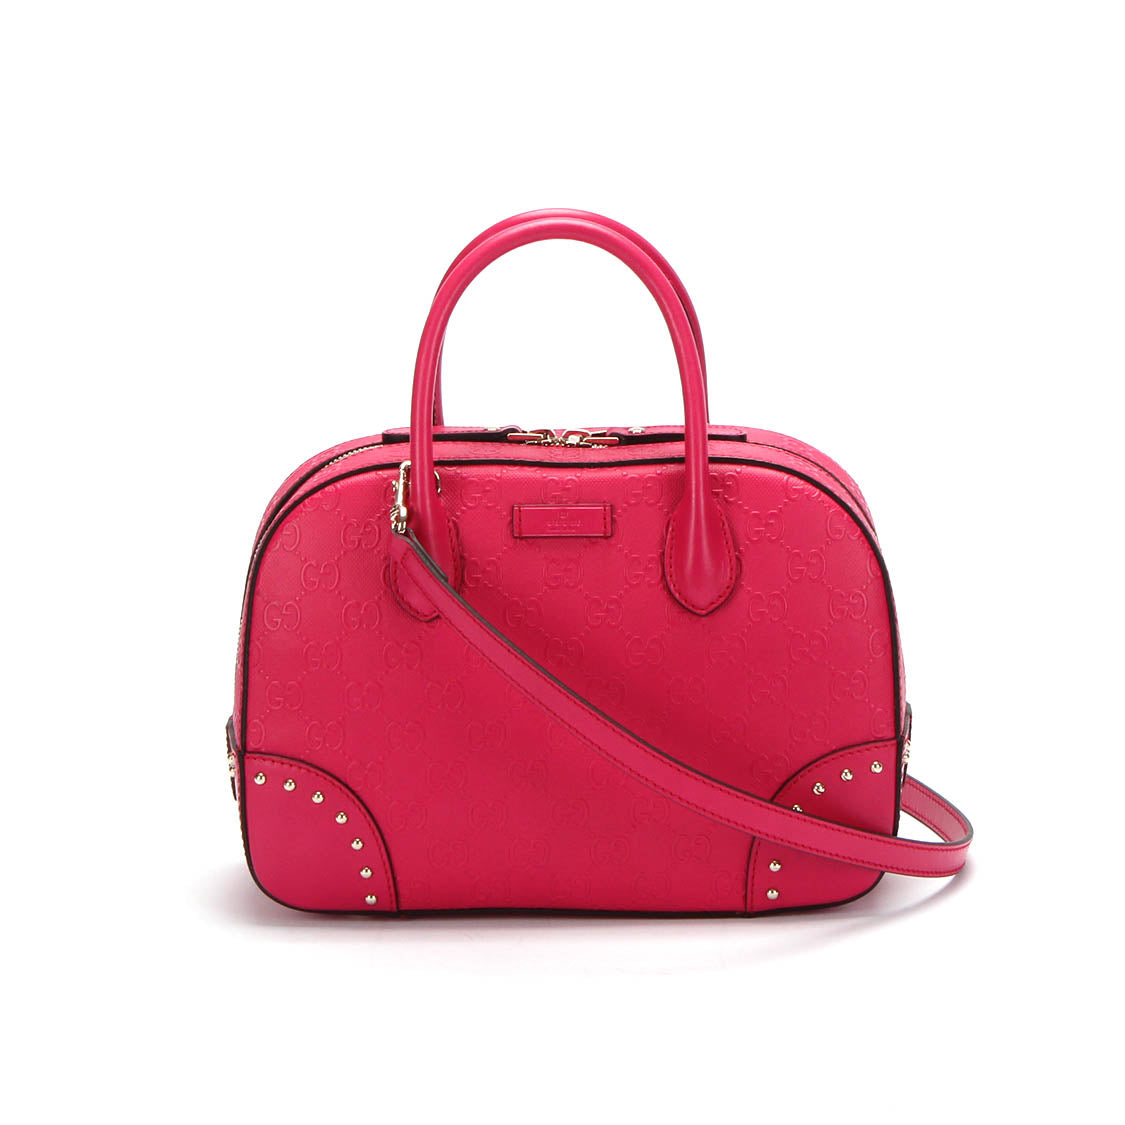 Guccissima Top Handle Bag